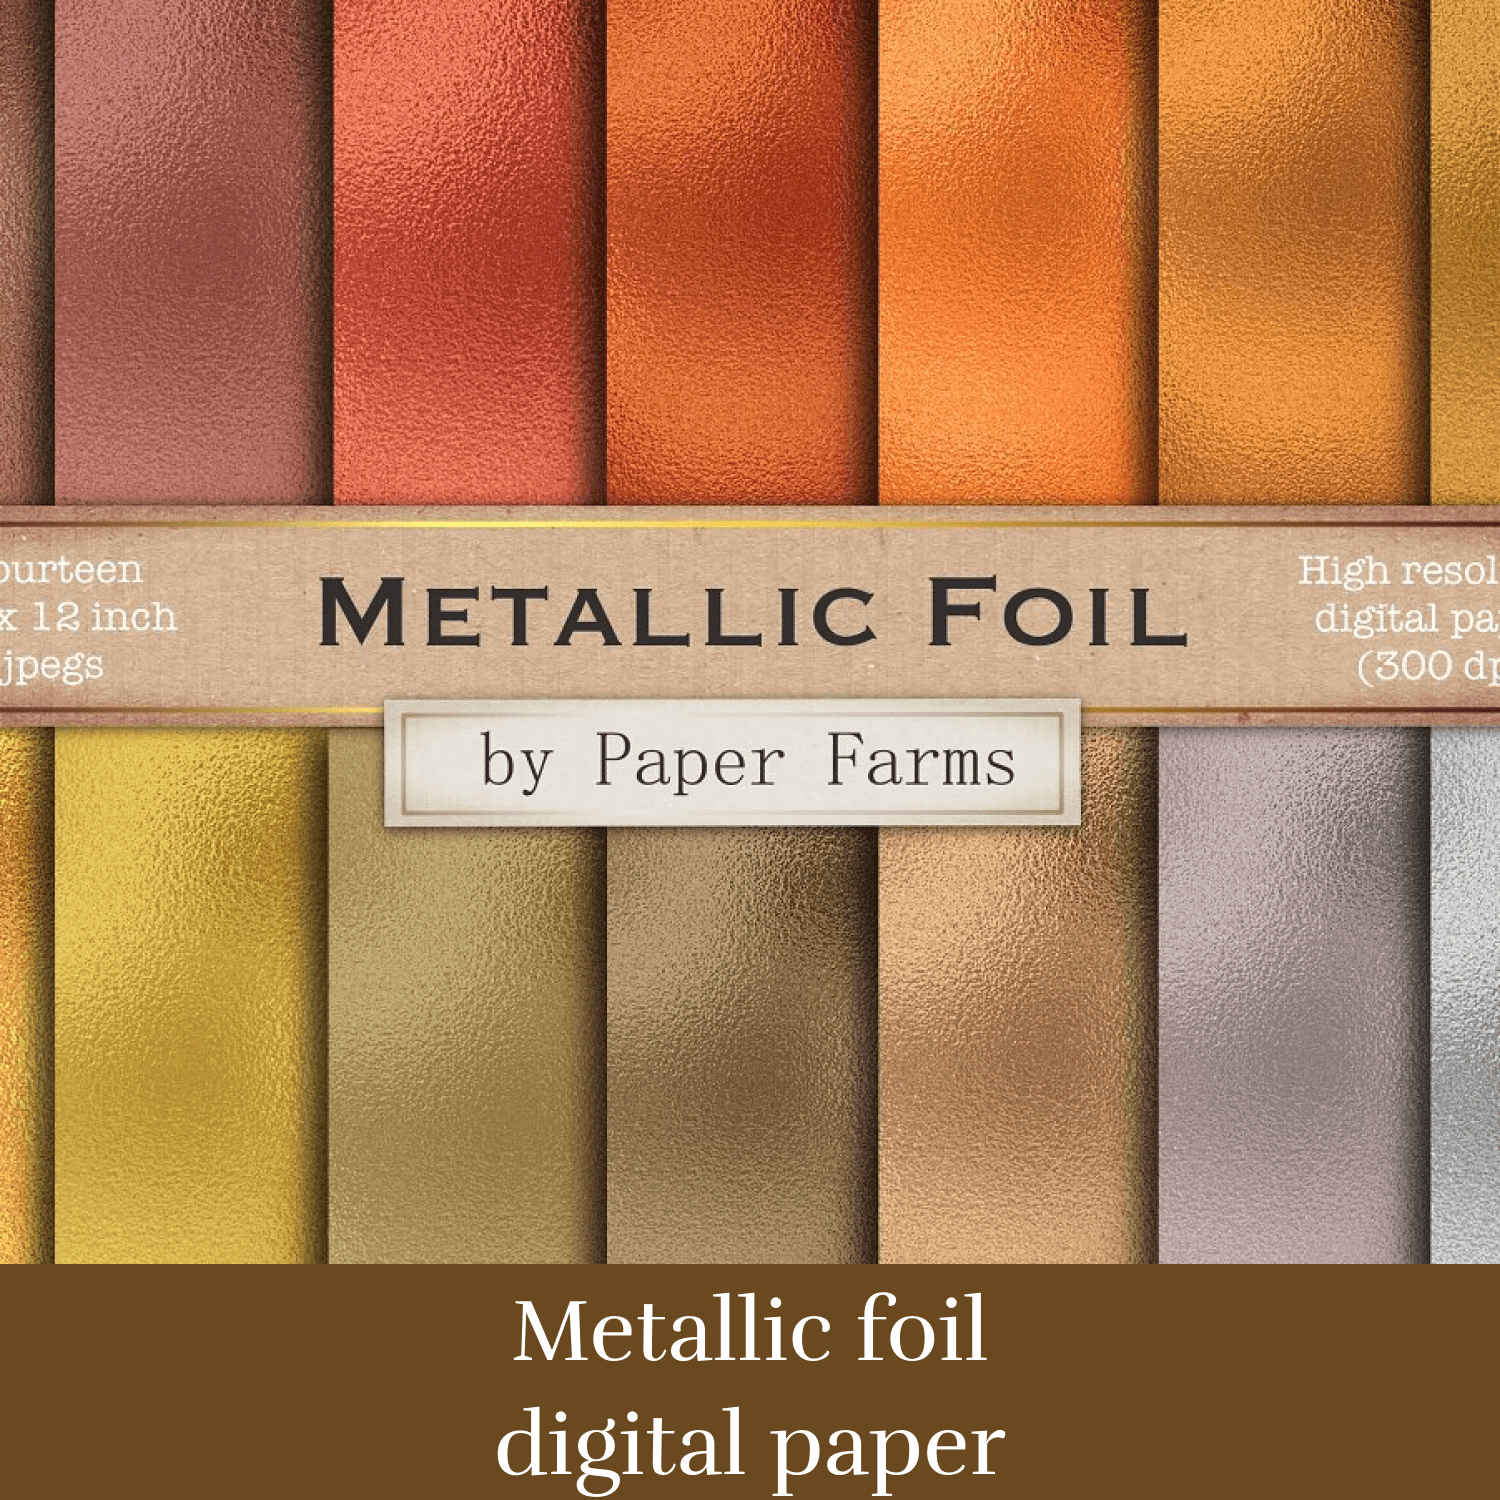 Metallic foil digital paper cover.